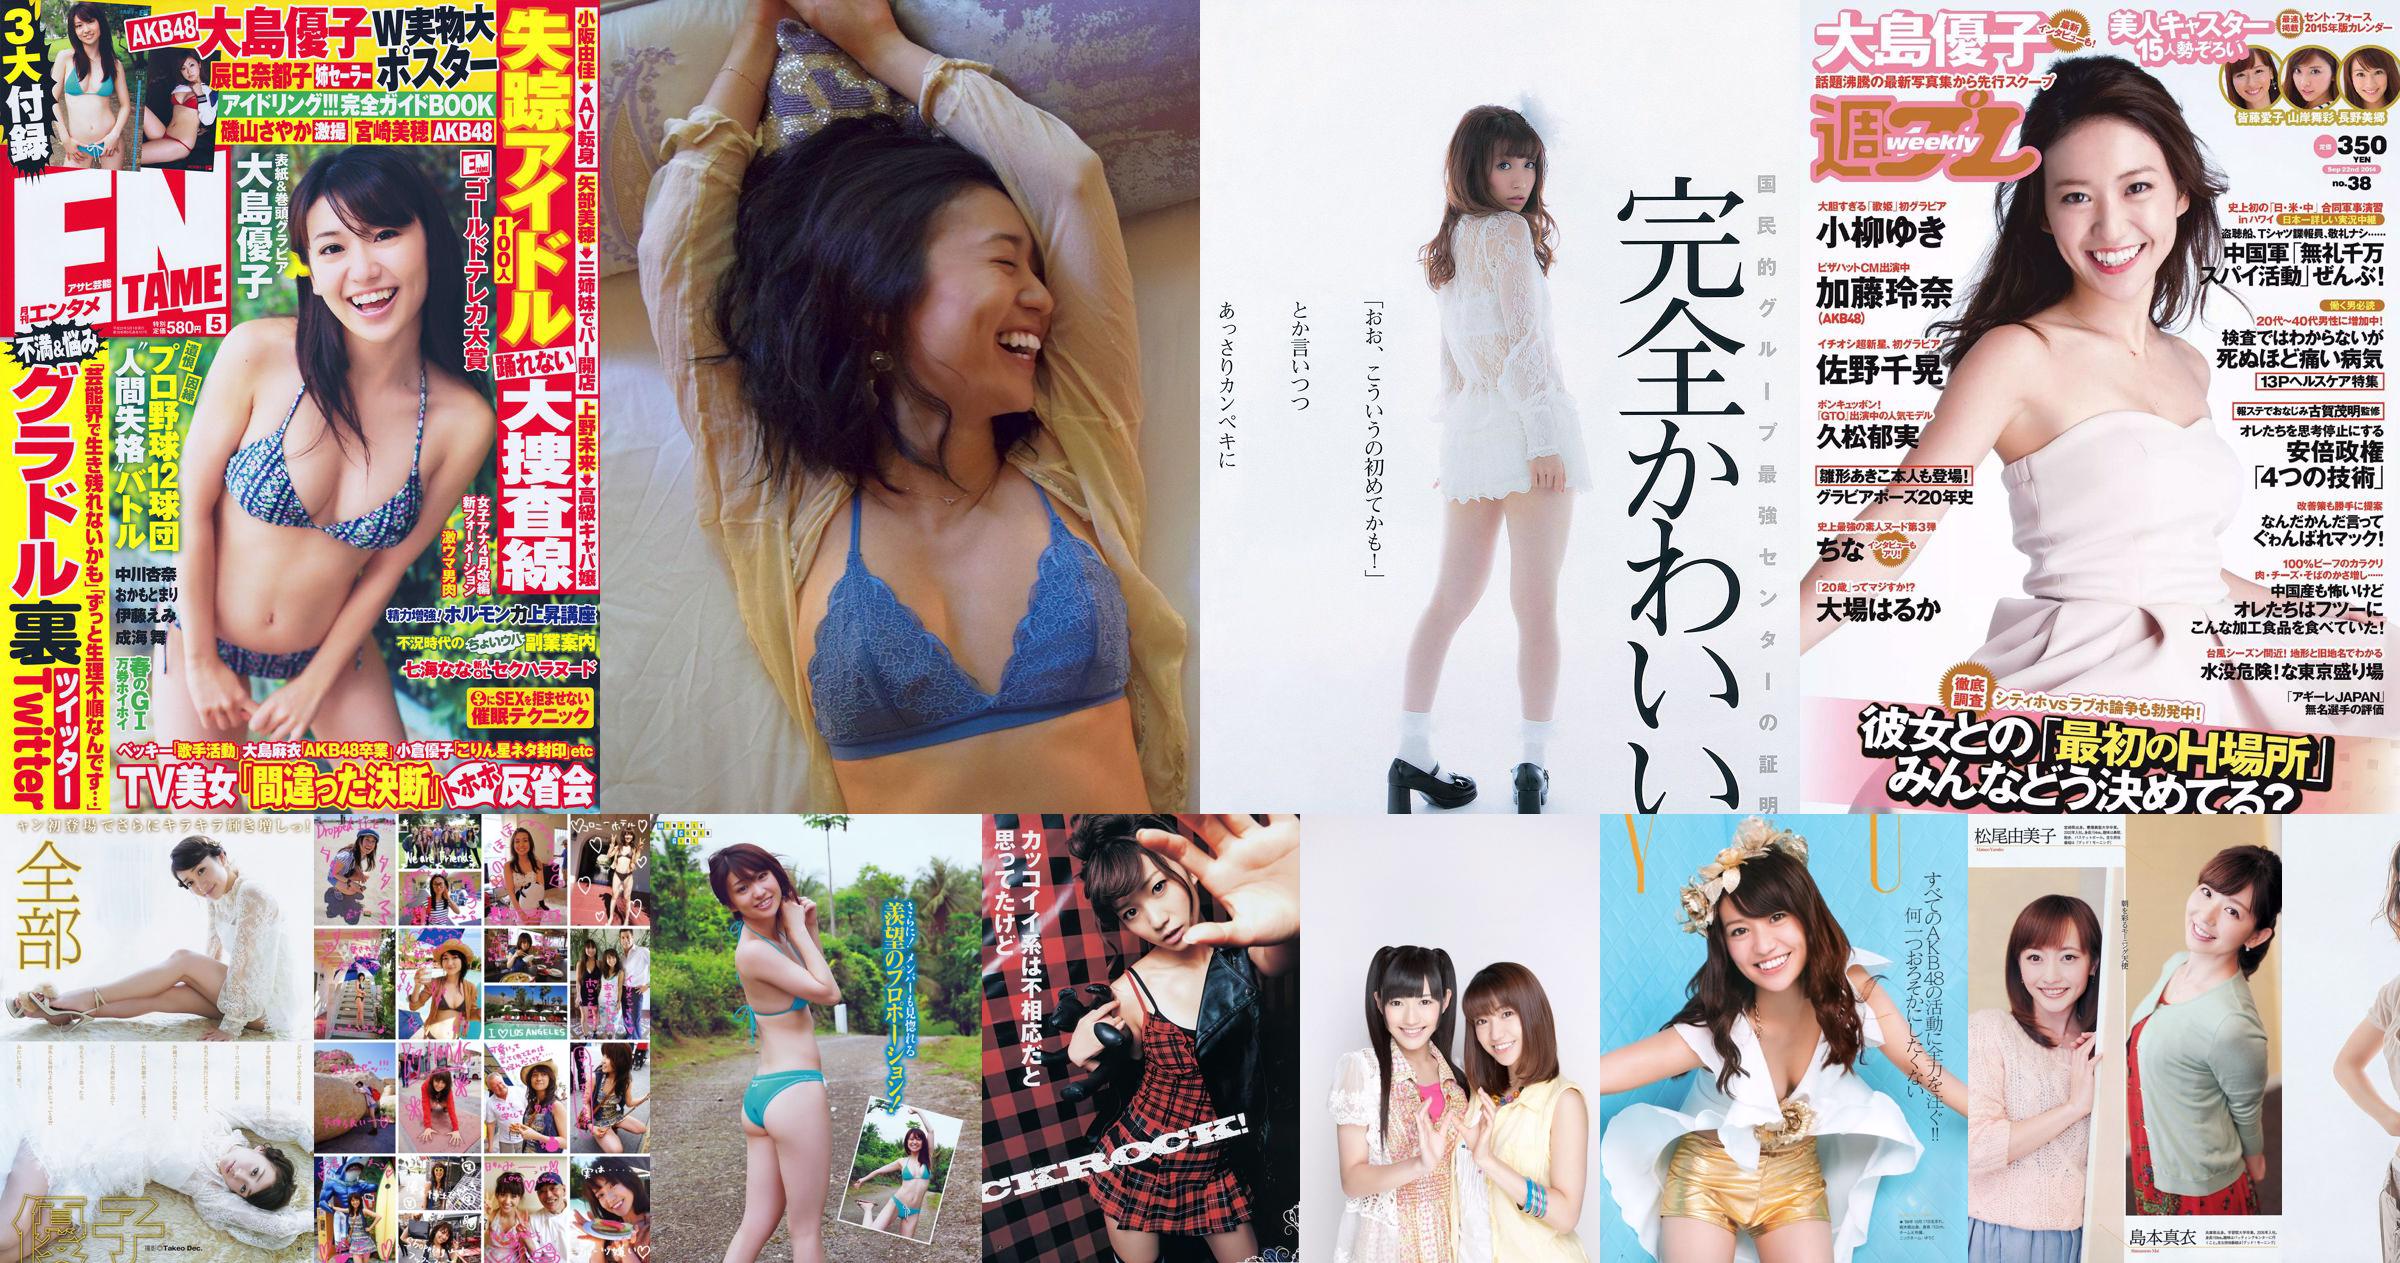 [นิตยสารหนุ่ม] Yuko Oshima Mai Shinuchi 2015 No.20 Photograph No.98a8ad หน้า 3